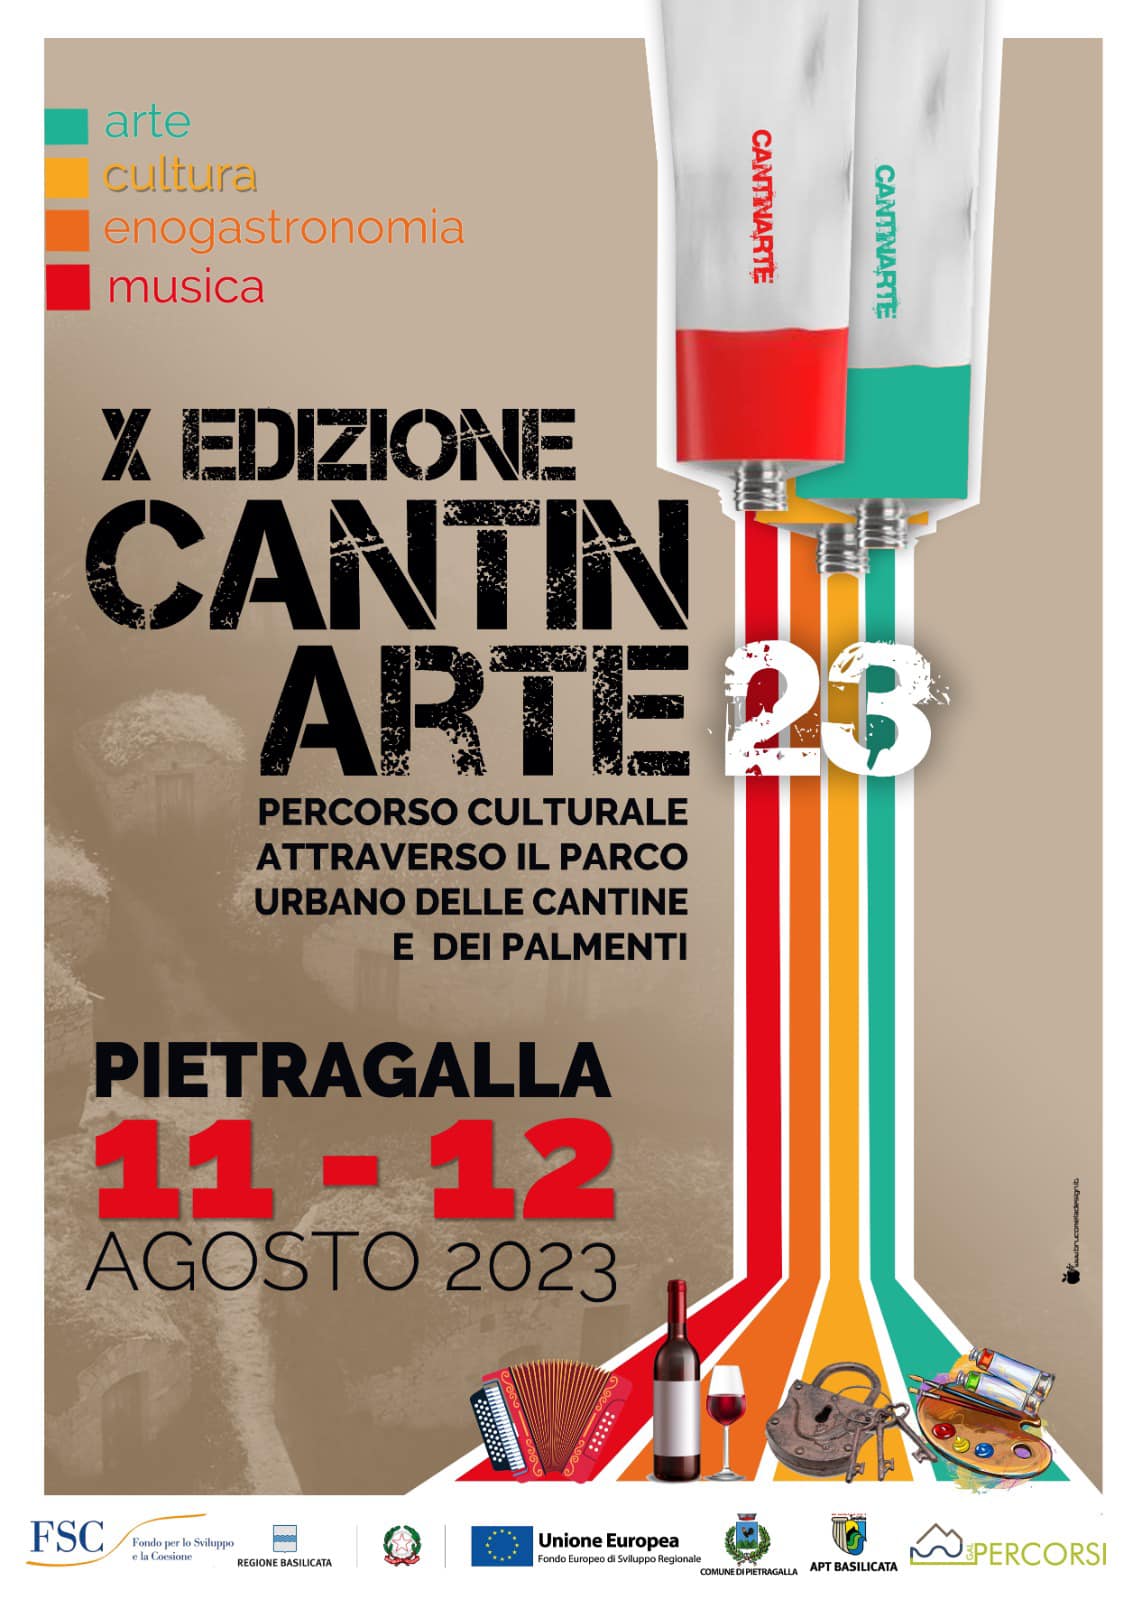 CantinArte 2023 - X Edizione